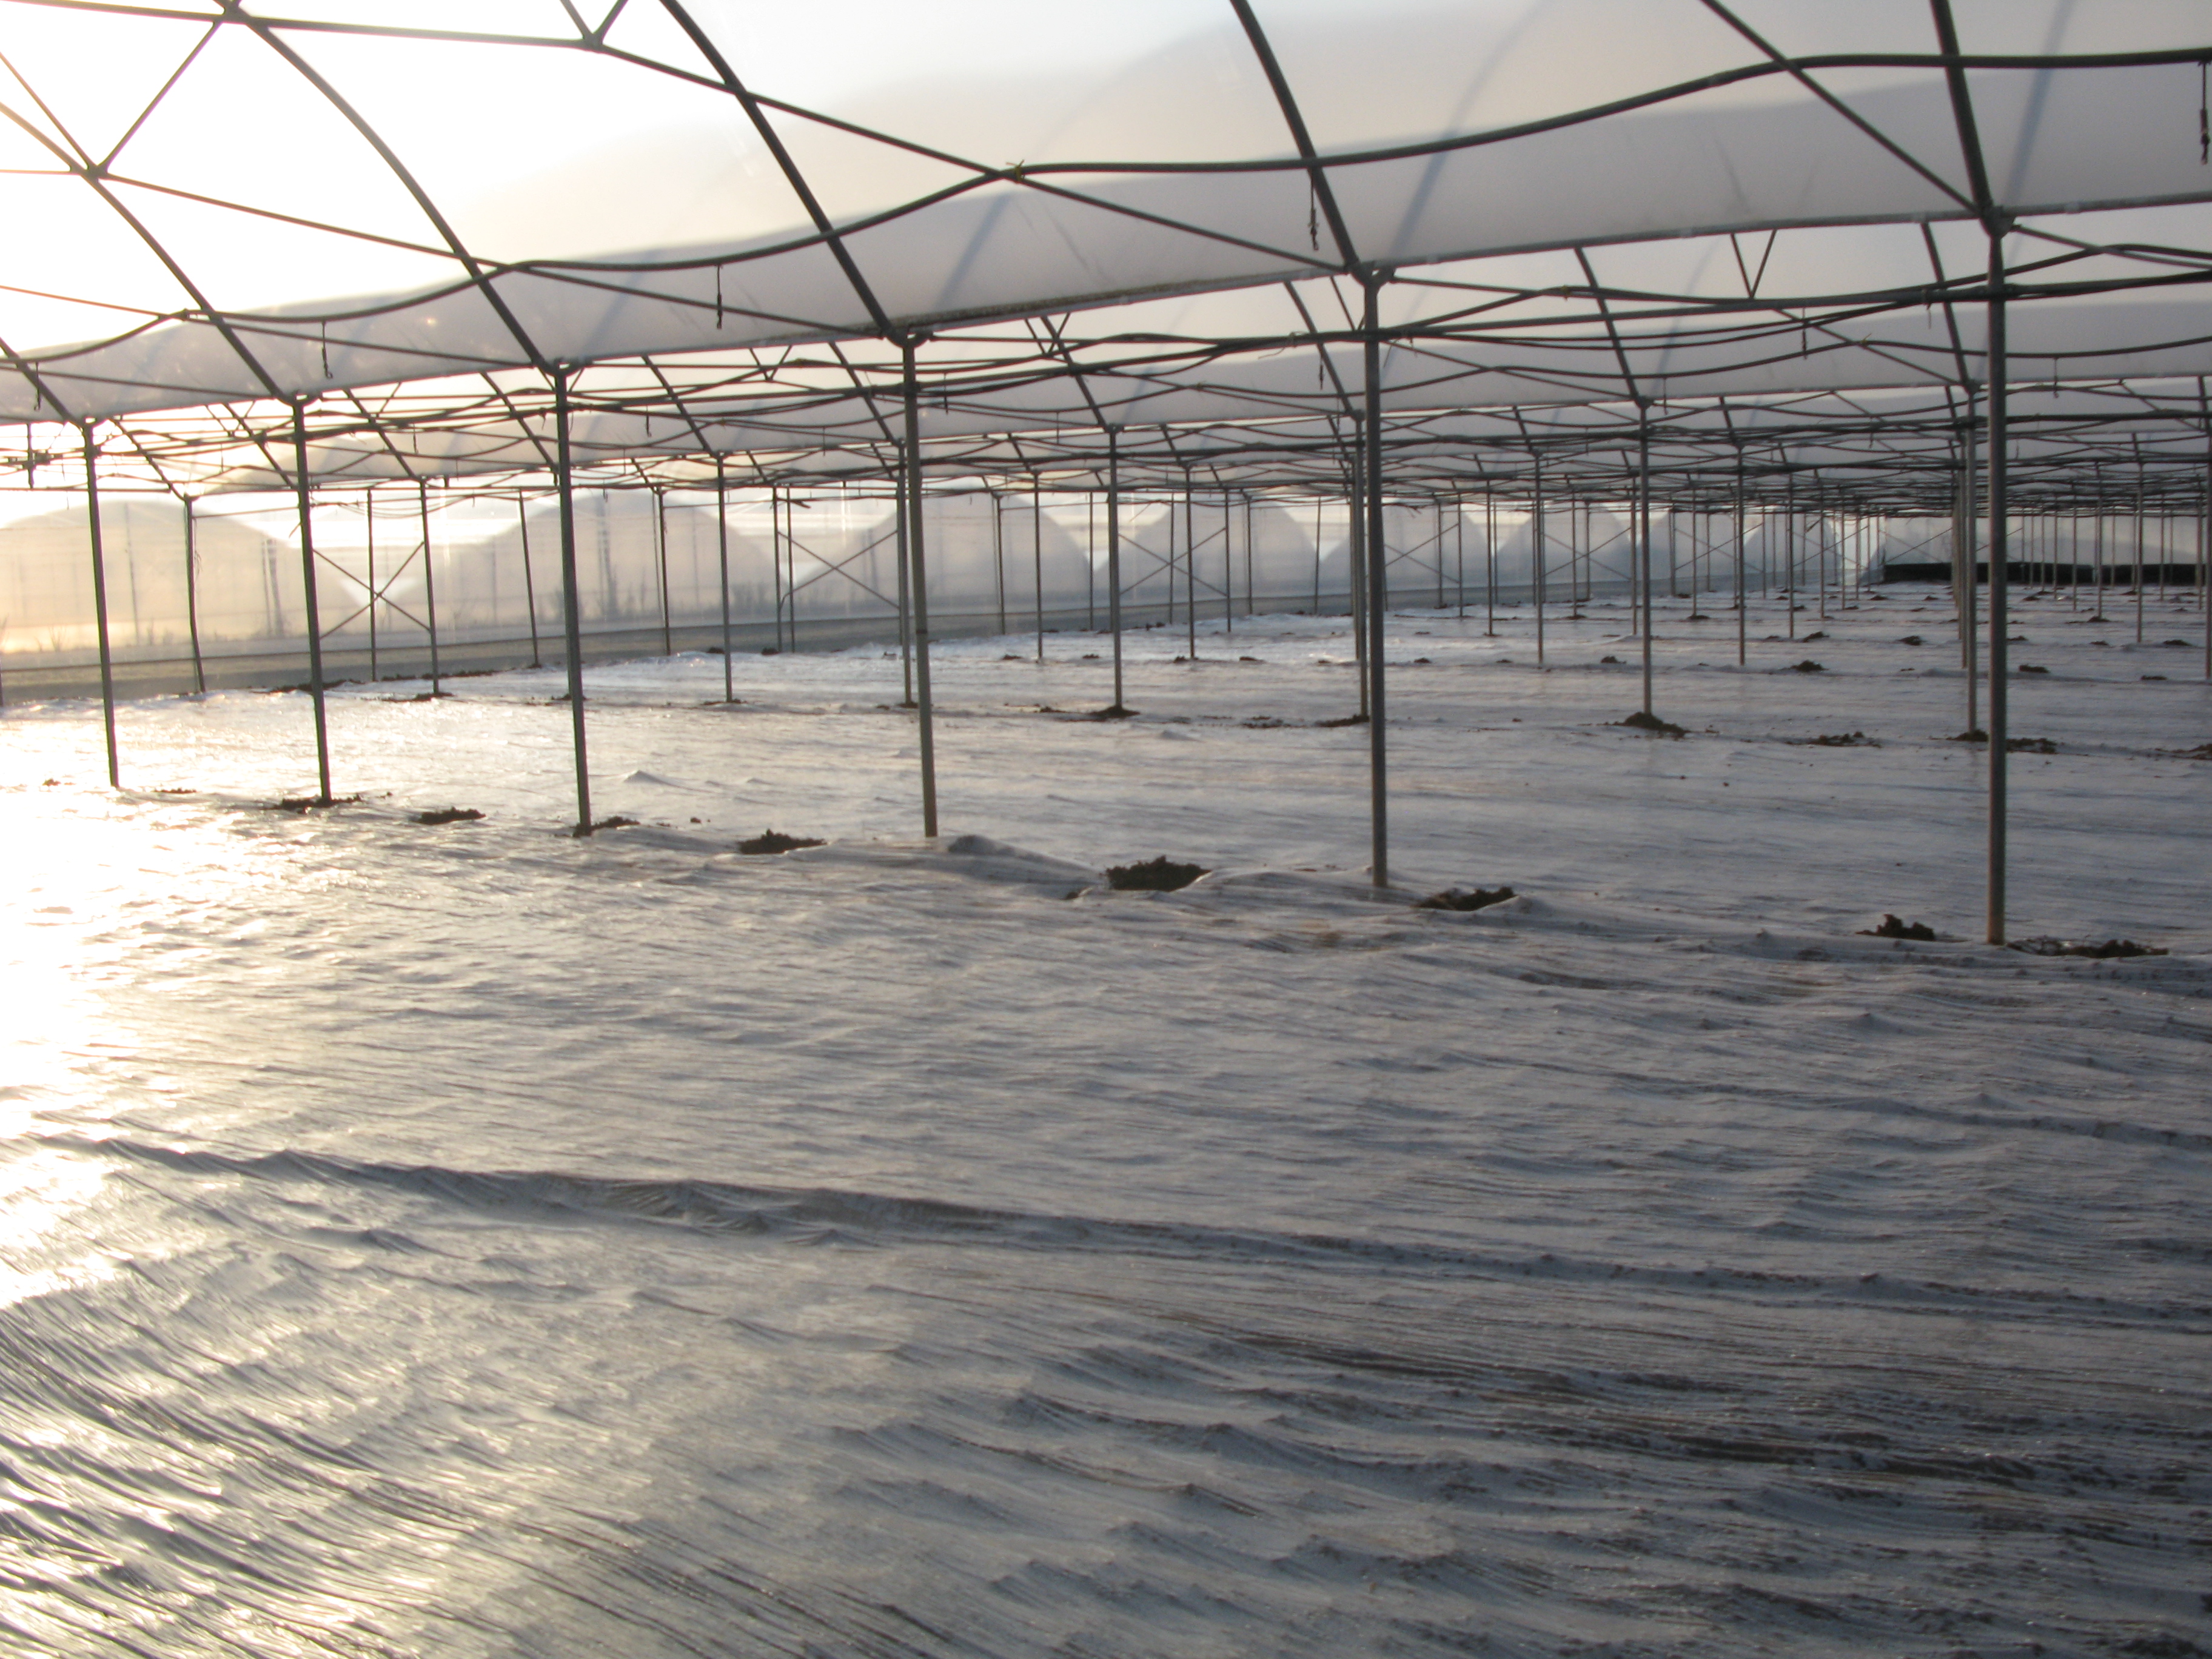 Solarizzazione in coltura protetta, sfruttando anche l’effetto serra della copertura